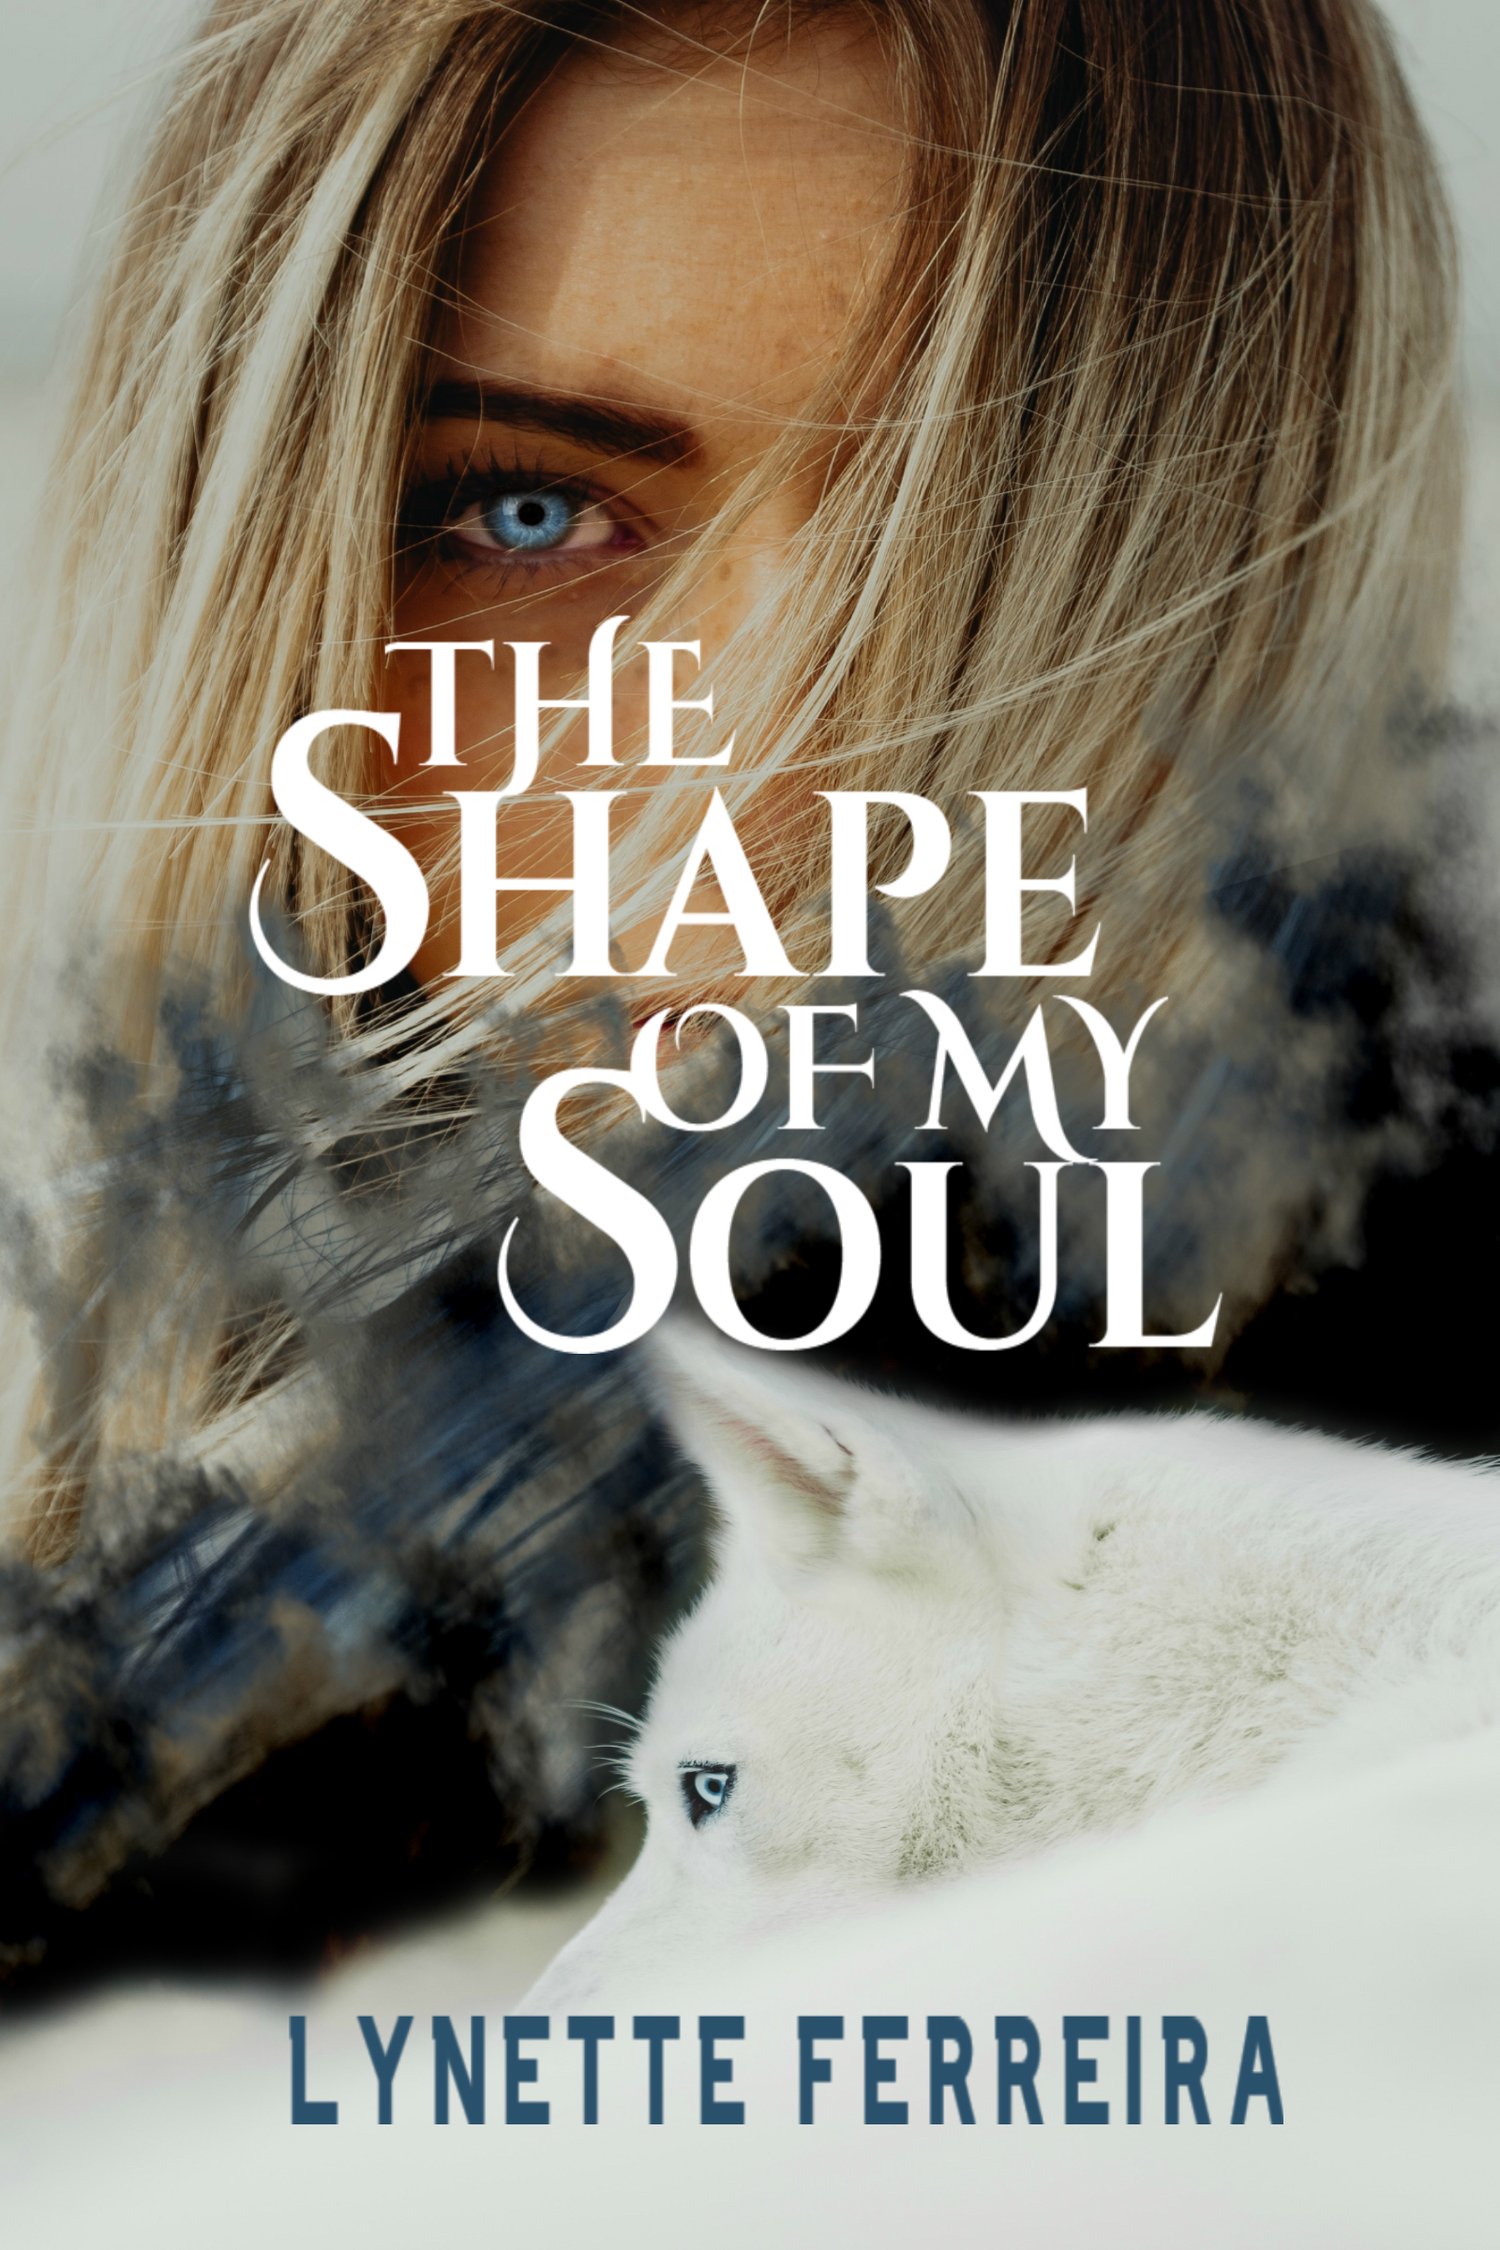 The Shape of My Soul by Lynette Ferreira